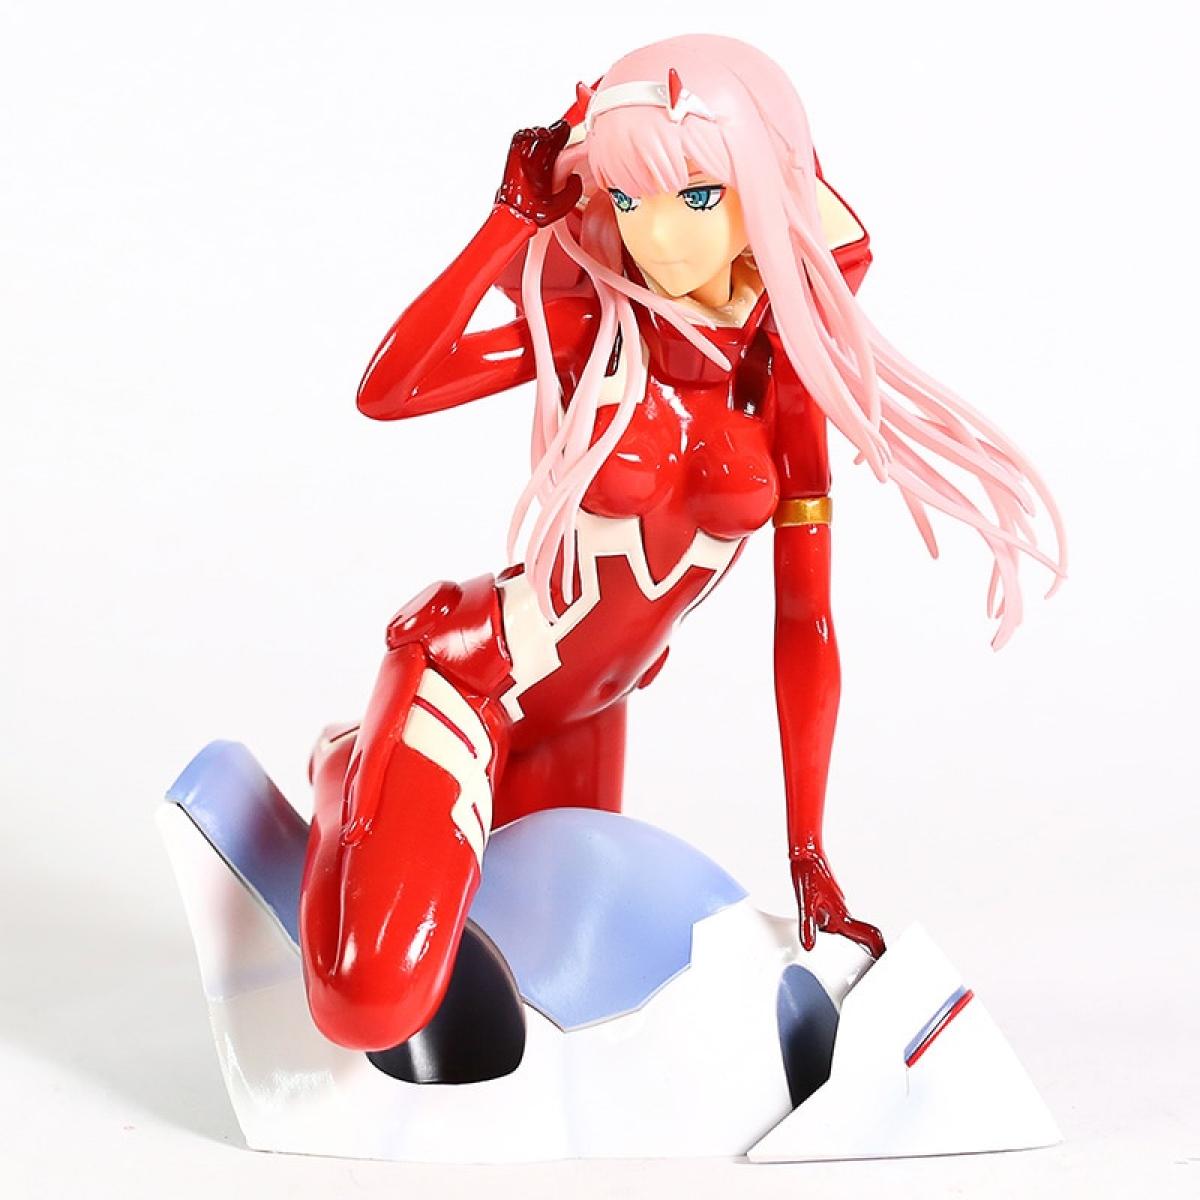 Mangas Universal Personnage d'animation Darling dans, zéro deux 02 robe rouge fille sexy pvc action numérique jouet collection modèle | action personnage(Rouge)